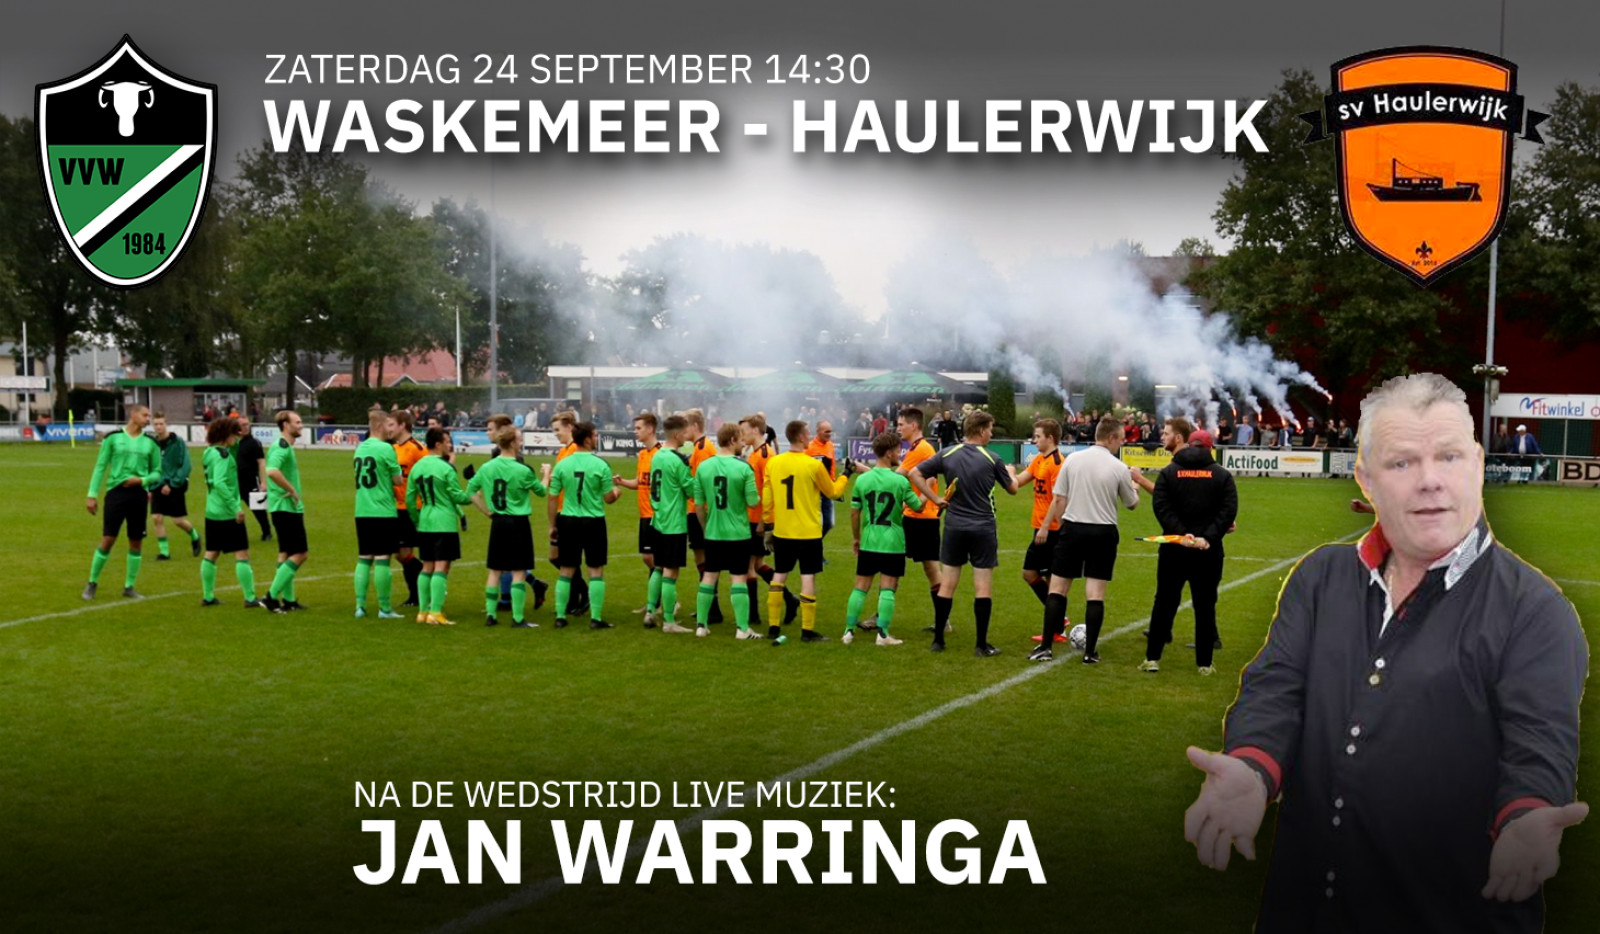 Start competitie met derby tegen Haulerwijk